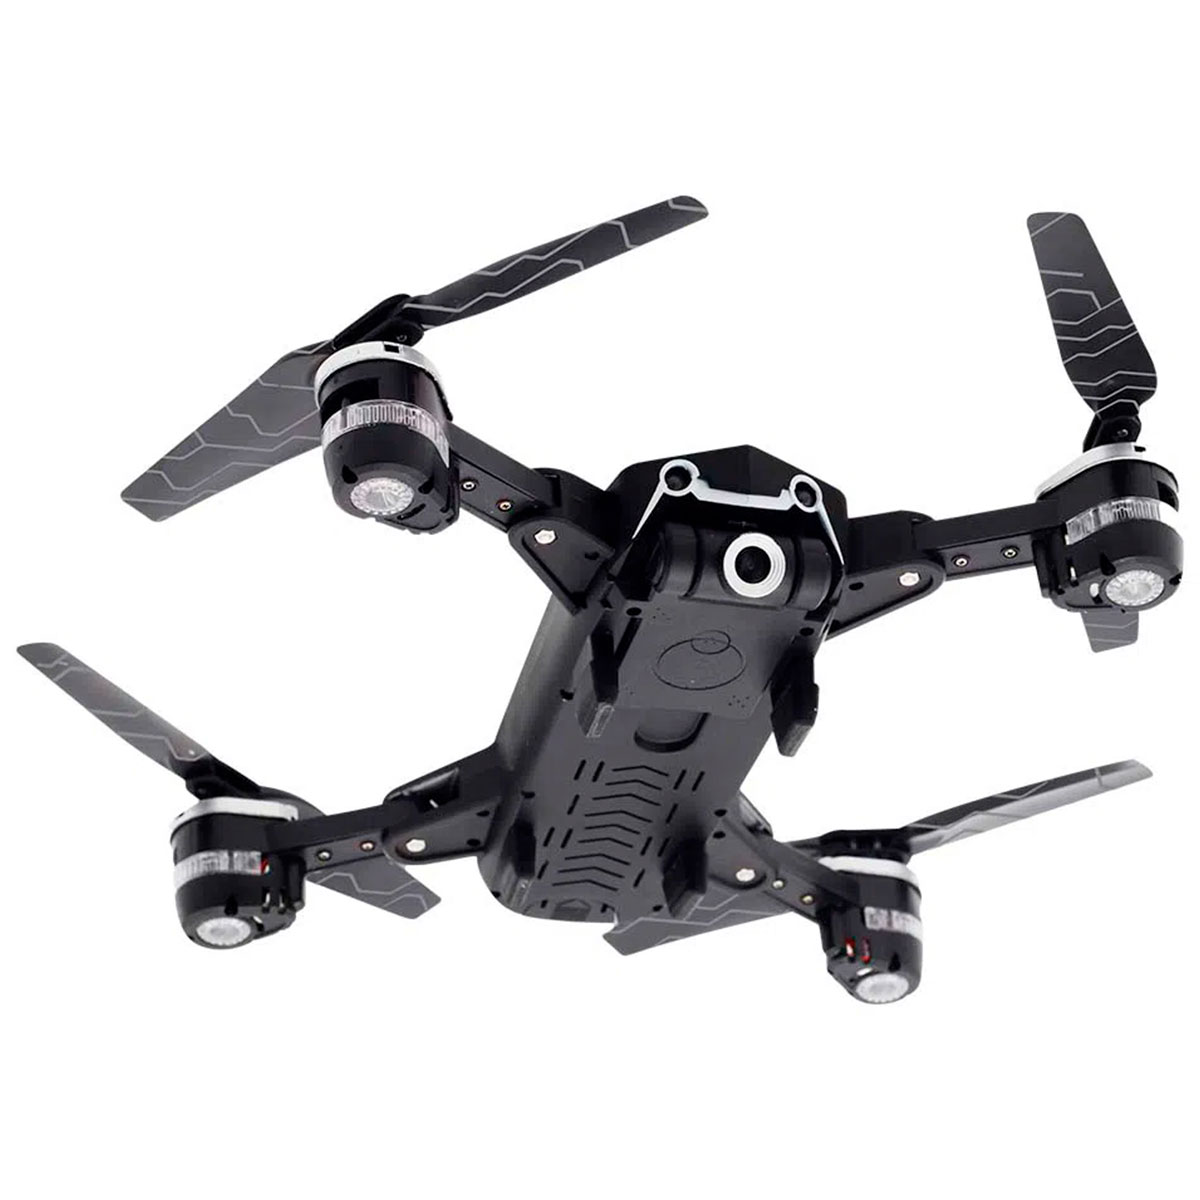 Drone Multilaser Eagle ES256 - Câmera 720p HD - Alcance 80 metros - Autonomia 14 minutos